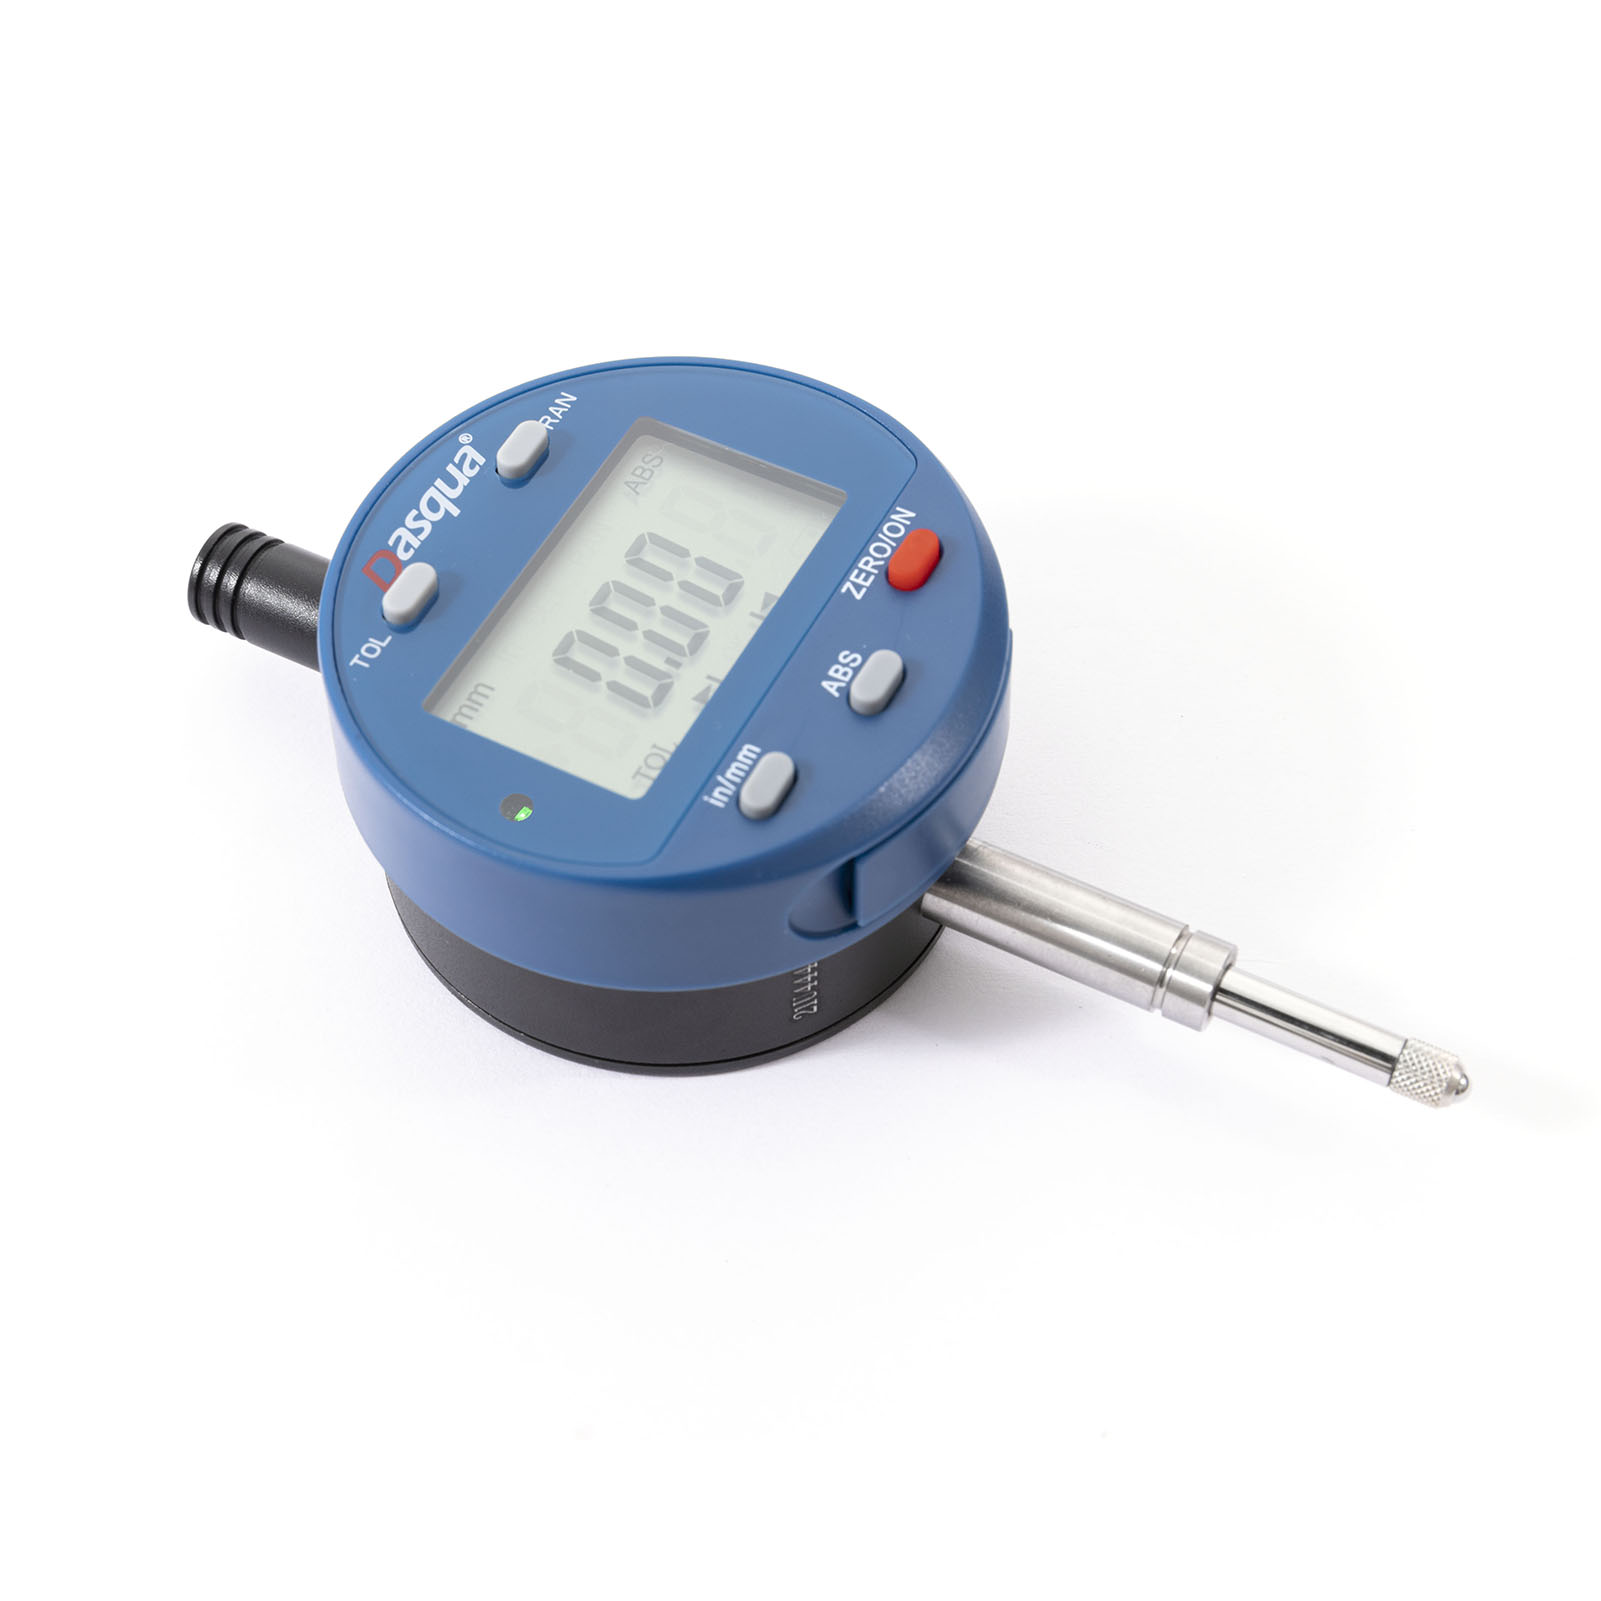 DASQUA wielofunkcyjny elektroniczny cyfrowy czujnik zegarowy miernik pomiarowy konwersja calowa/metryczna 0-1 Cal/25.4mm narzędzie pomiarowe 5260-3705